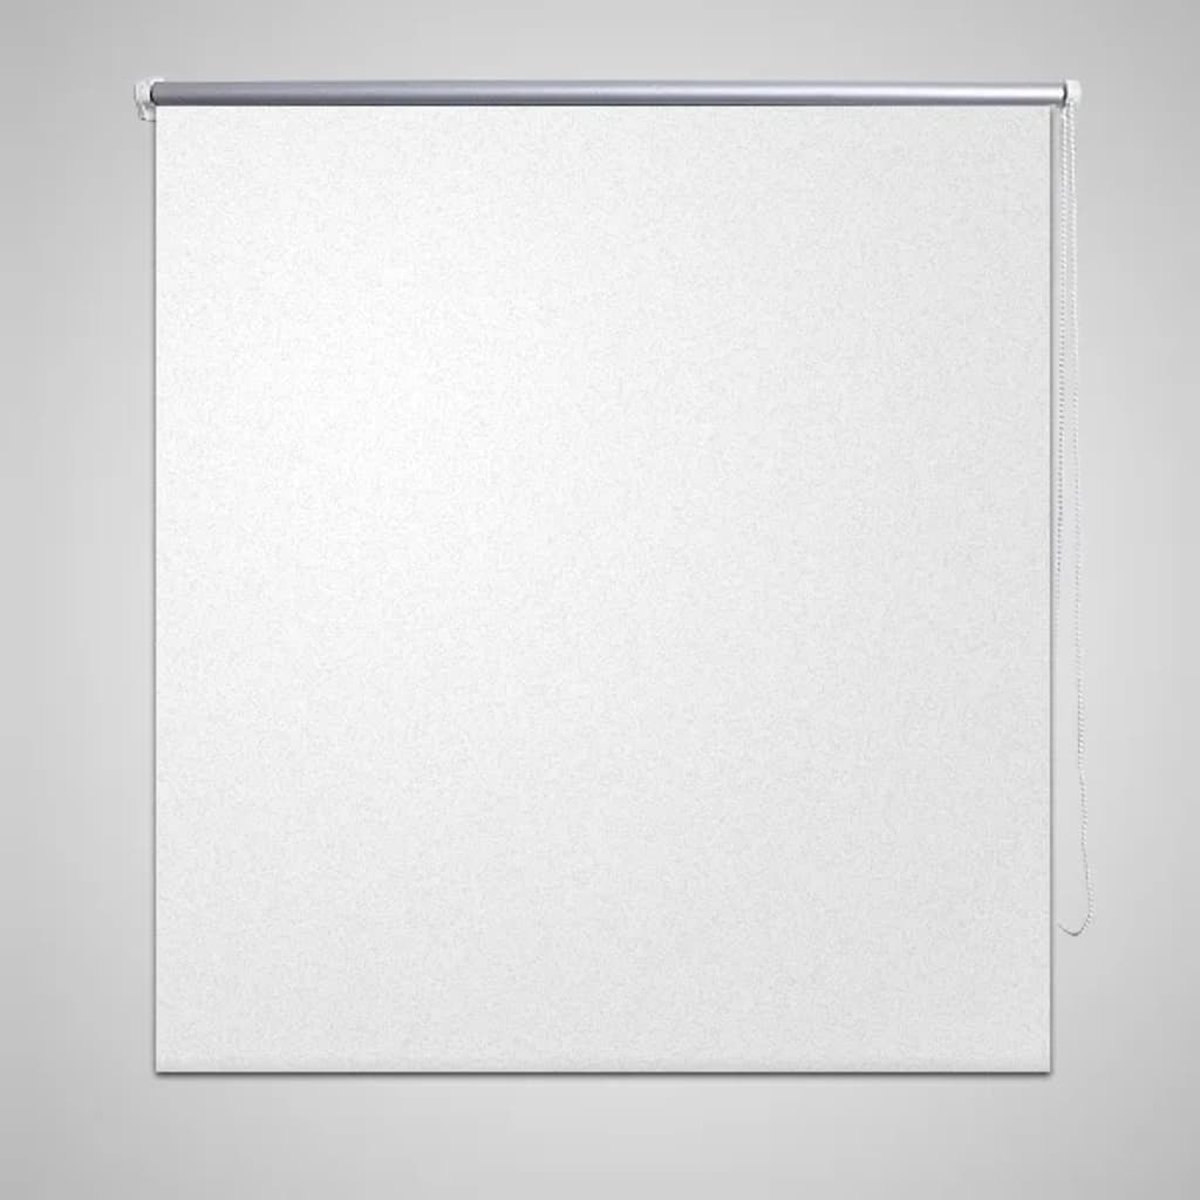 VidaLife Rolgordijn verduisterend 80 x 175 cm wit